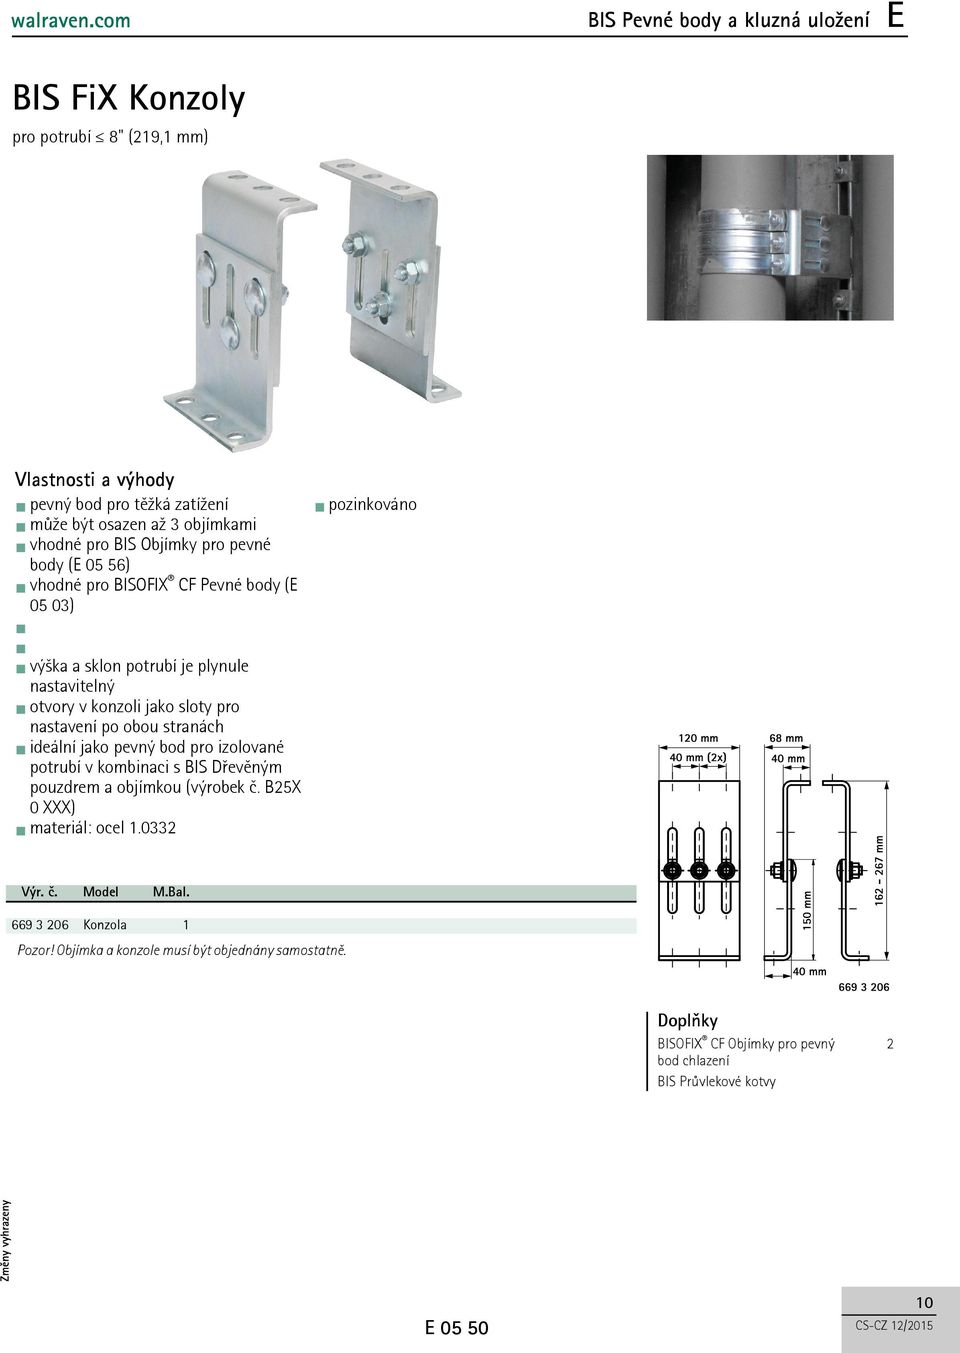 stranách ideální jako pevný bod pro izolované potrubí v kombinaci s BIS Dřevěným pouzdrem a objímkou (výrobek č. B25X 0 XXX) materiál: ocel.0332 Výr. č. 669 3 206 Model Konzola M.